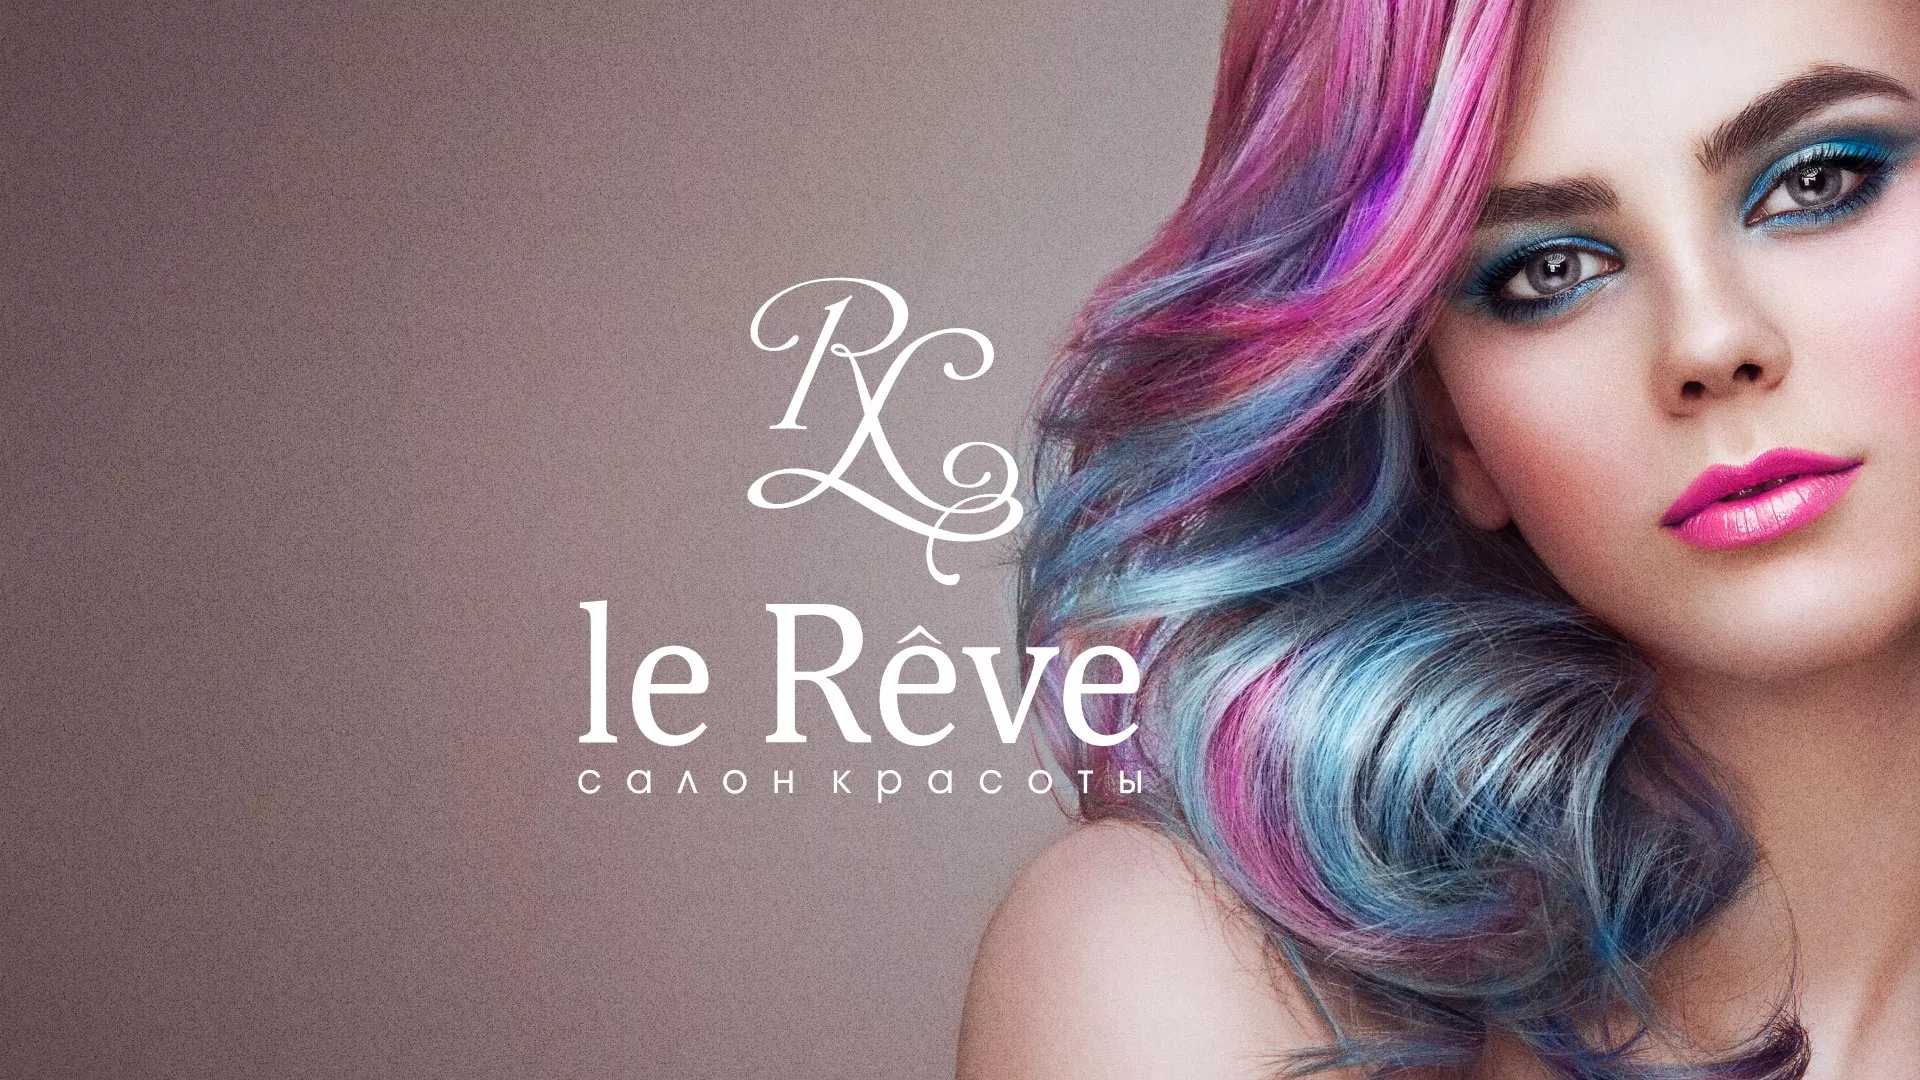 Создание сайта для салона красоты «Le Reve» в Канаше